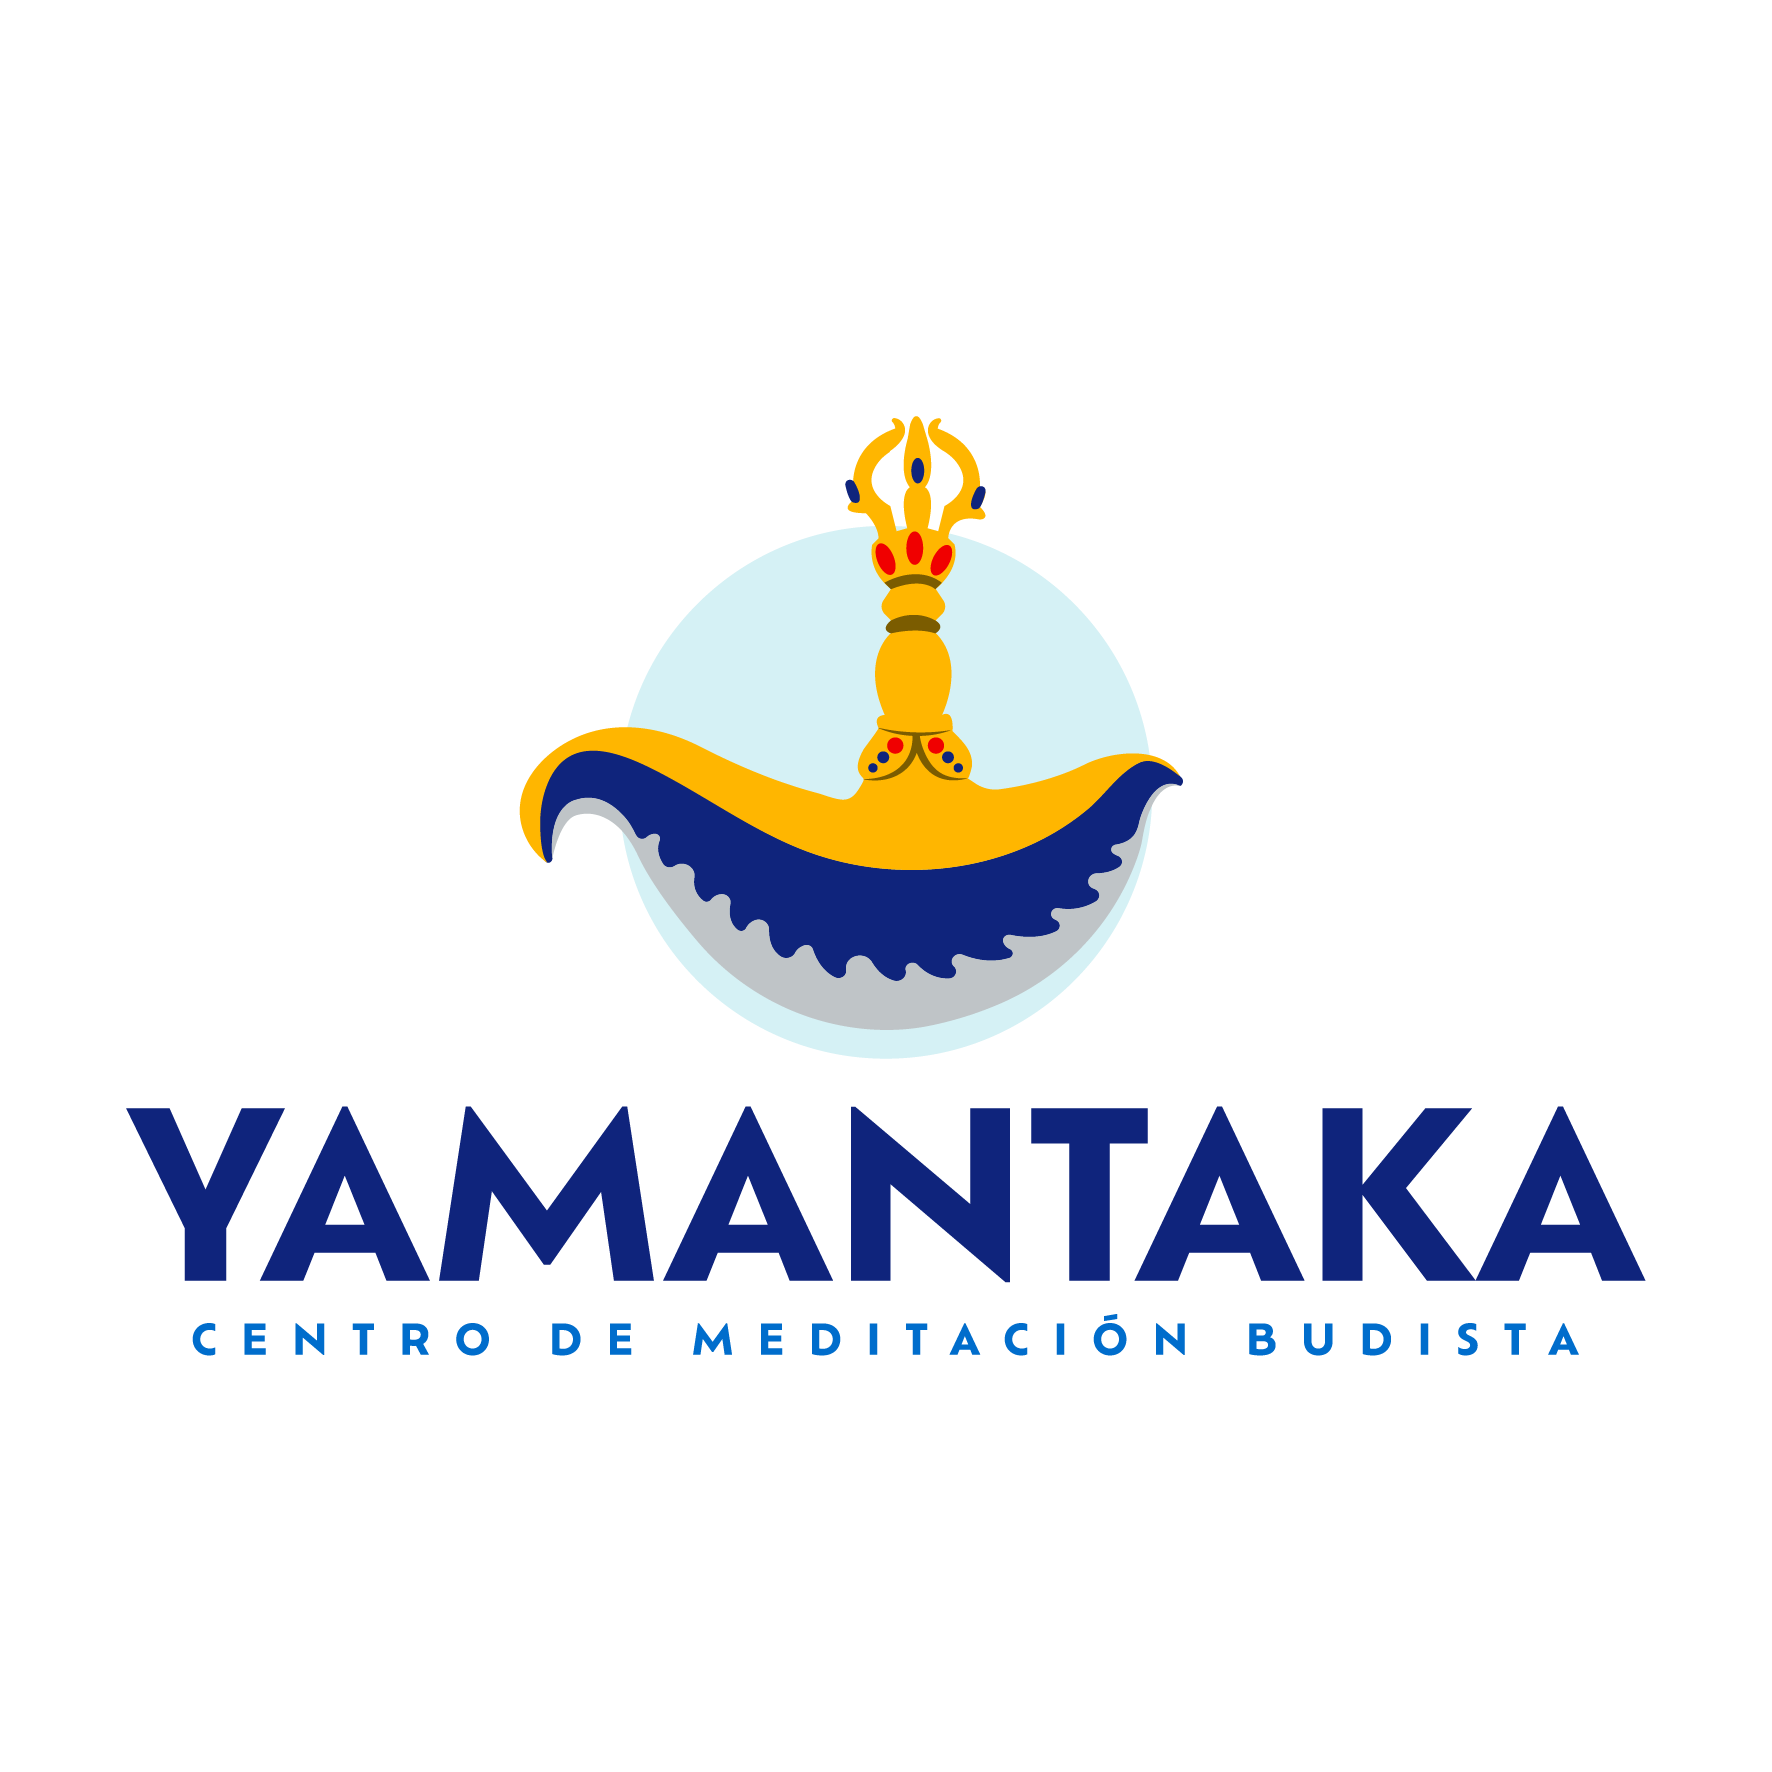 Centro de Meditación Budista Yamantaka